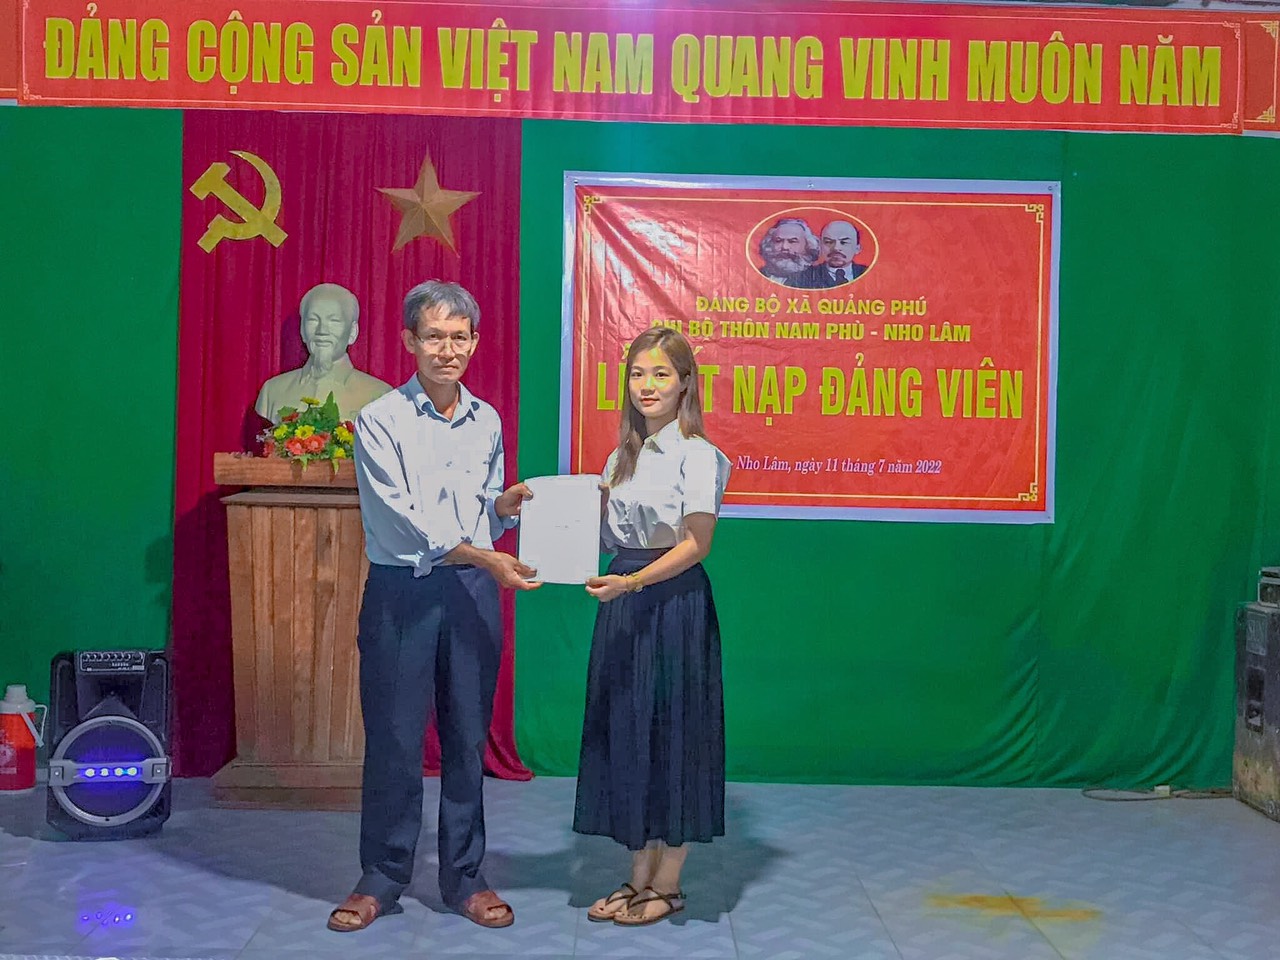 Chi bộ thôn Nam Phù_Nho Lâm kết nạp đảng viên mới